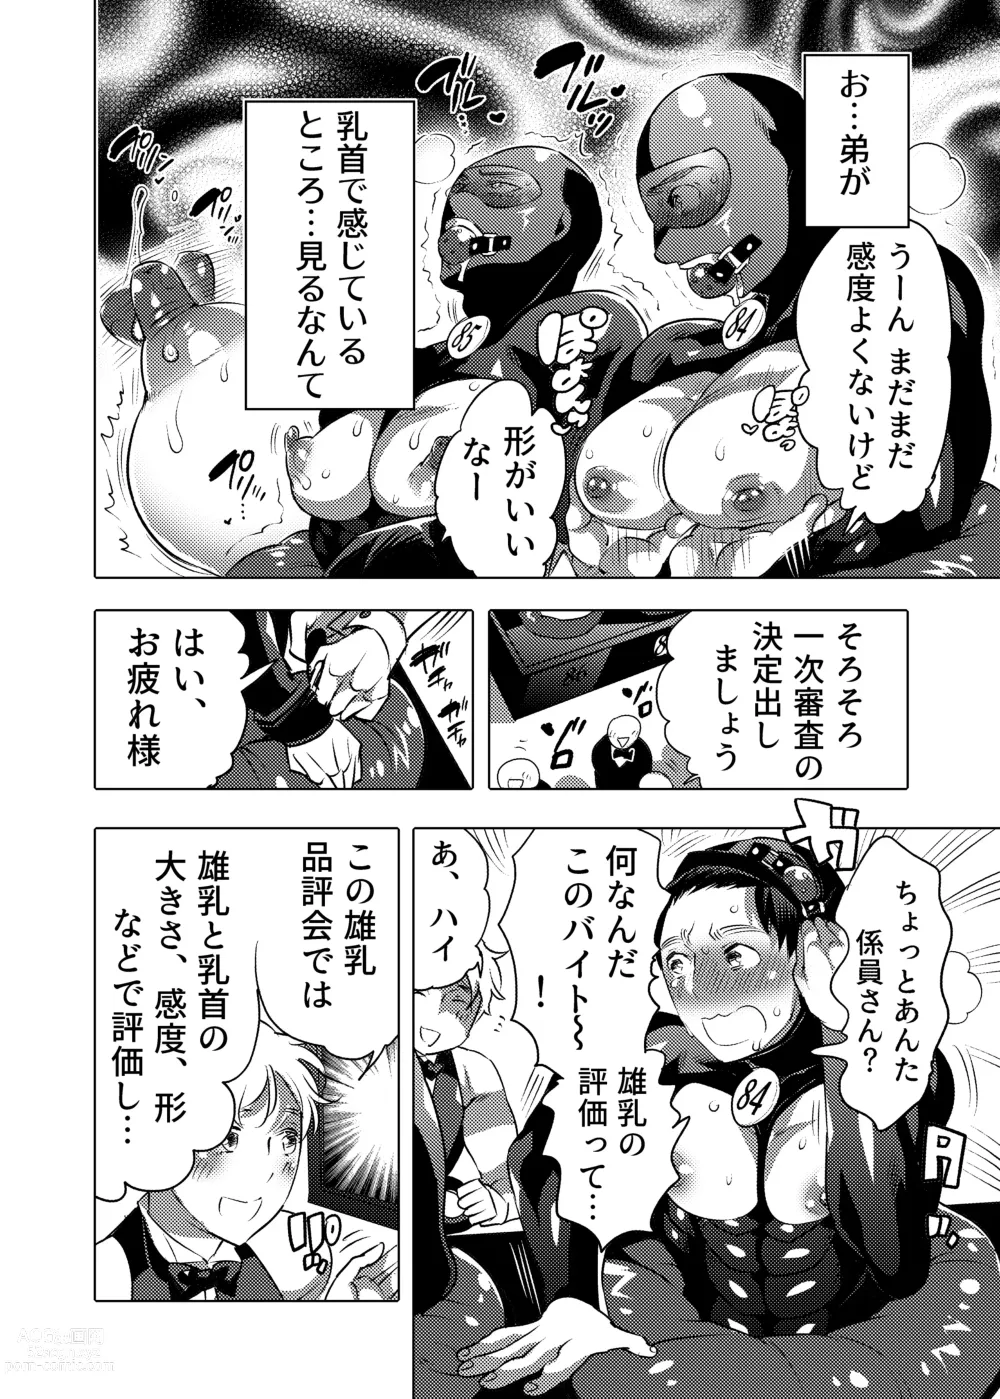 Page 10 of doujinshi Ochichi Hinpyoukai